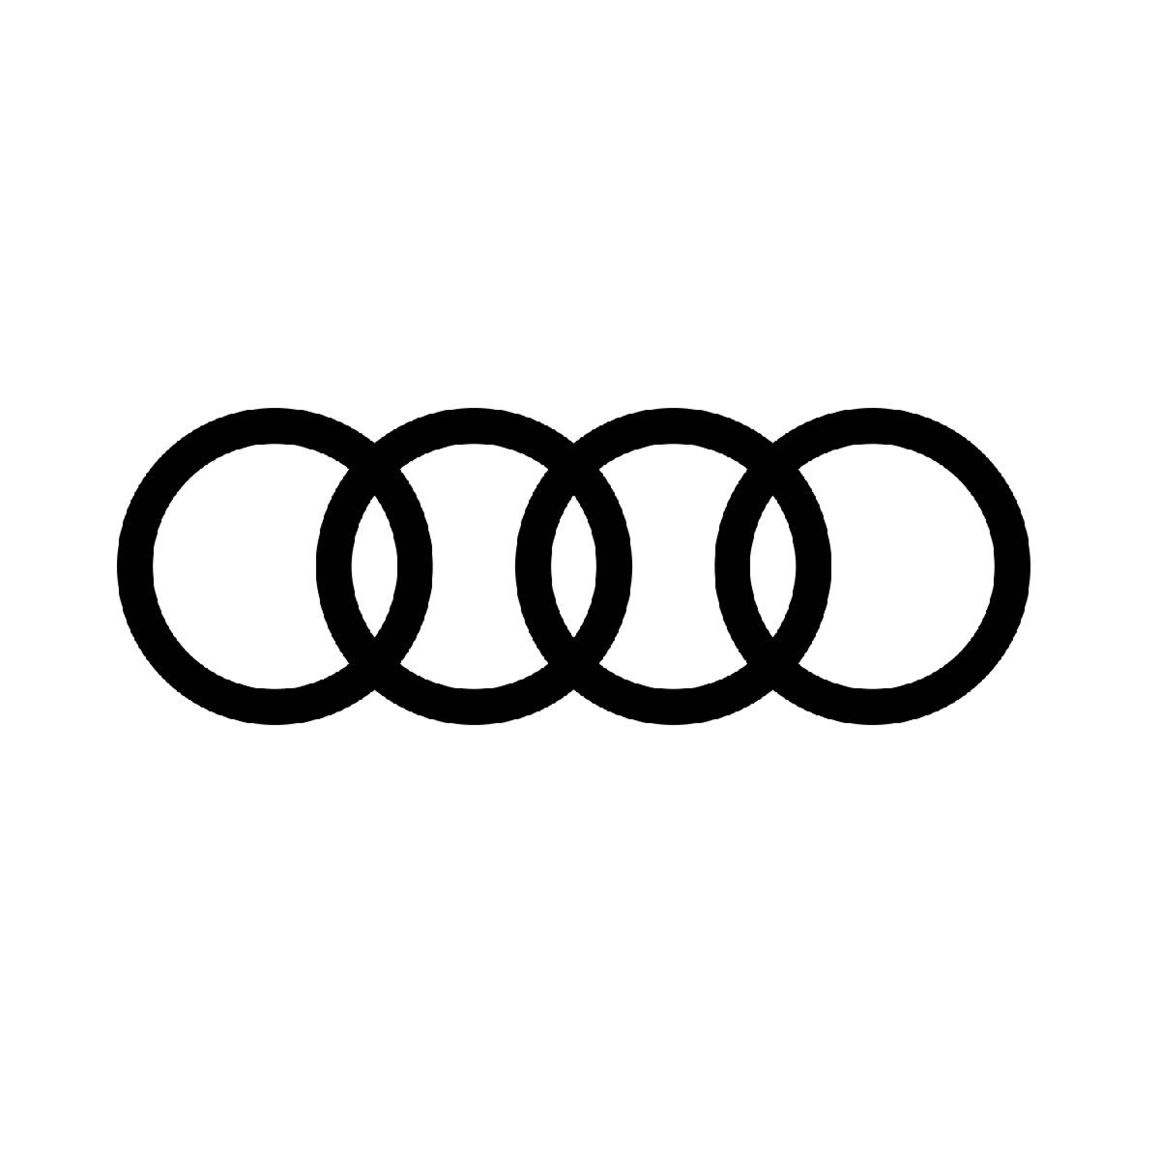 New Audi Logo.jpg